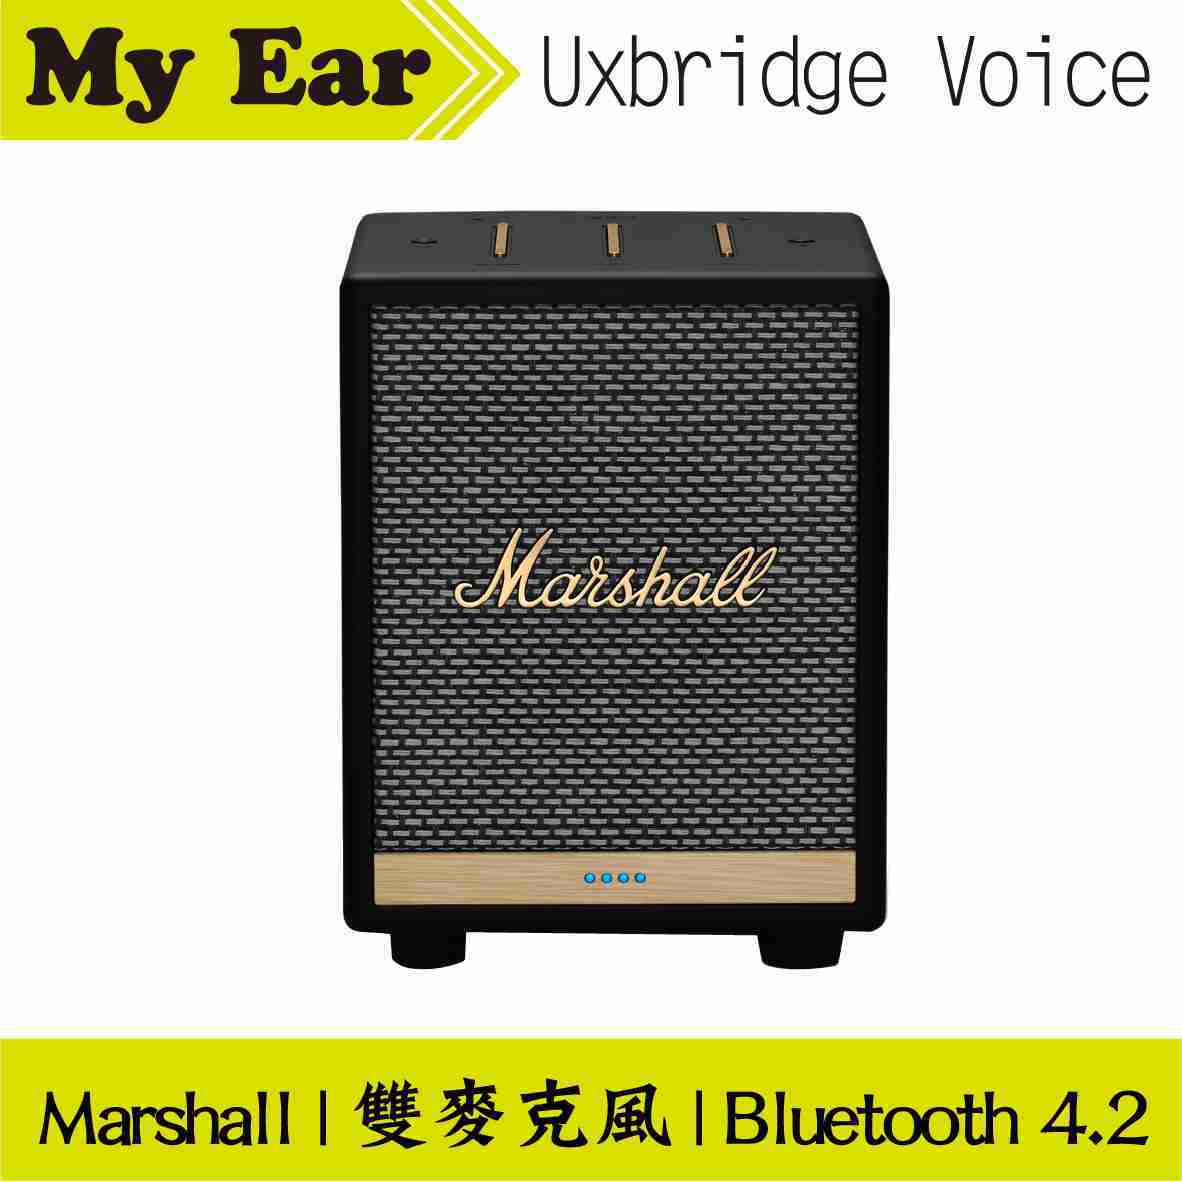 Marshall 馬歇爾 Uxbridge Voice 雙麥克風 藍芽 智慧 喇叭 | My Ear 耳機專門店